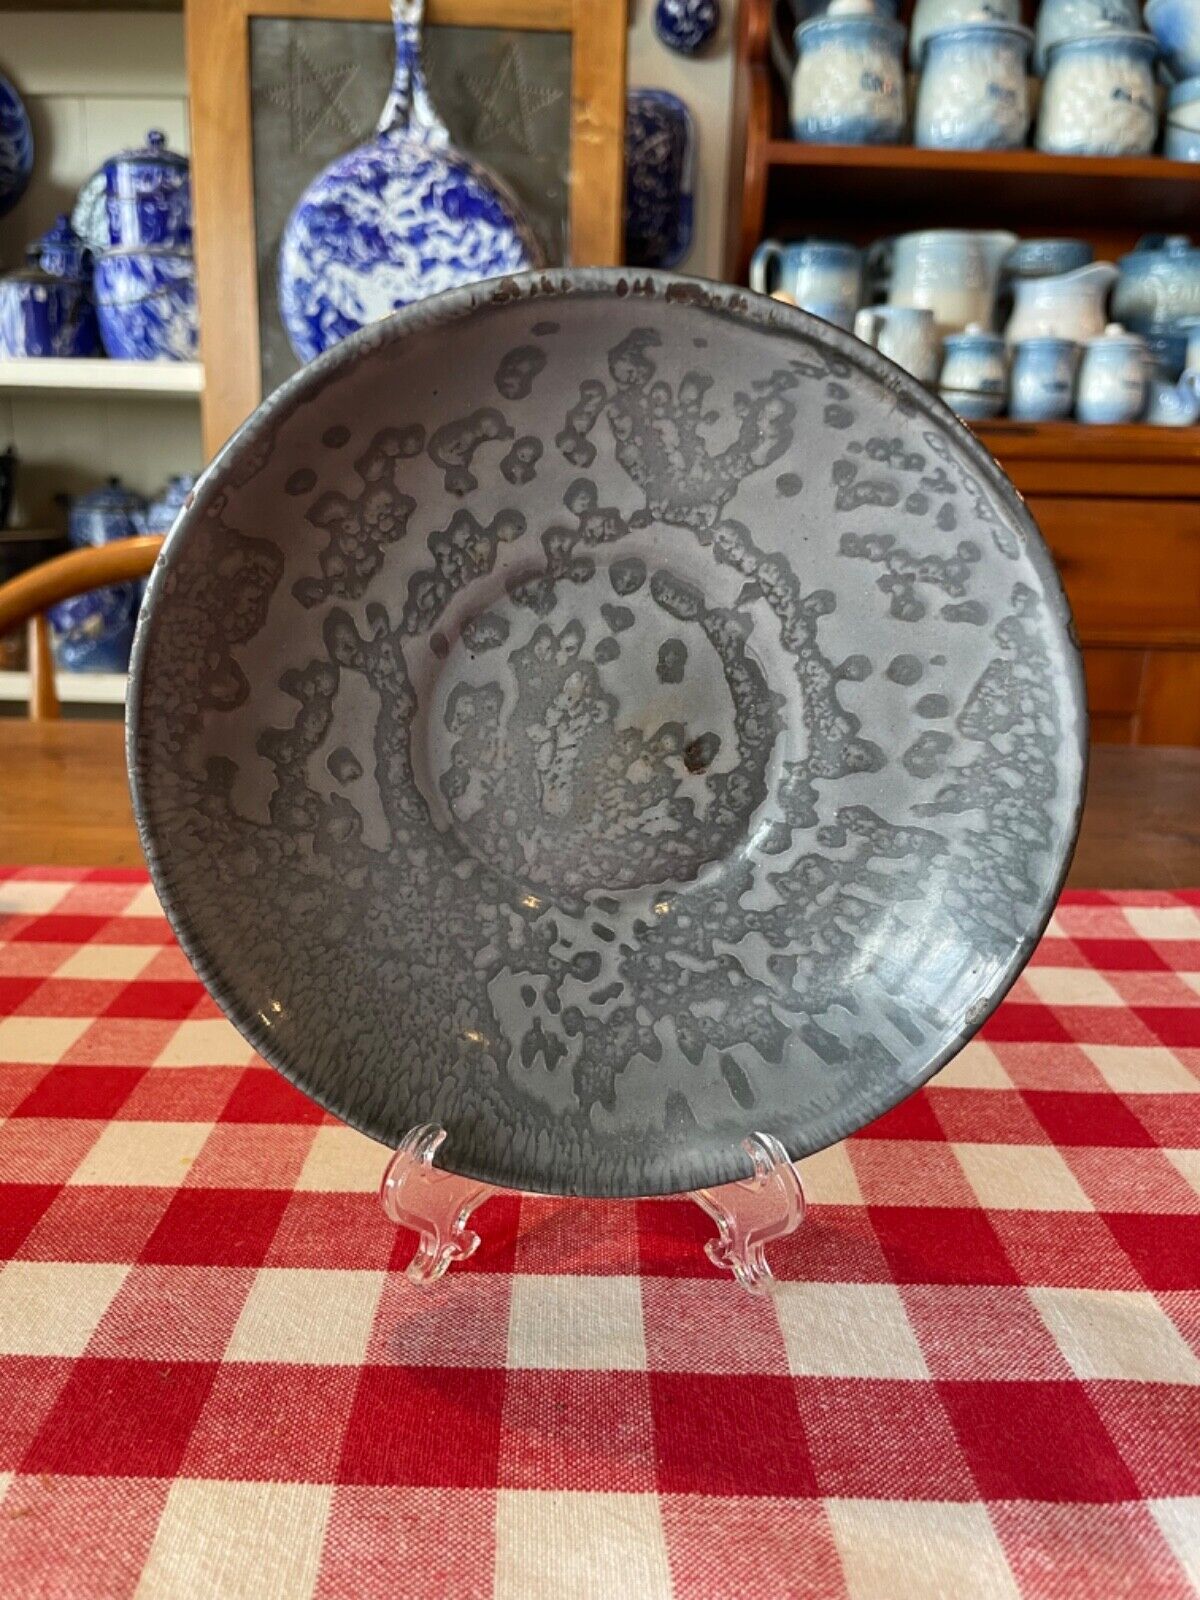 Antique Gray Graniteware Saucer (6 1/4 inches in diameter)